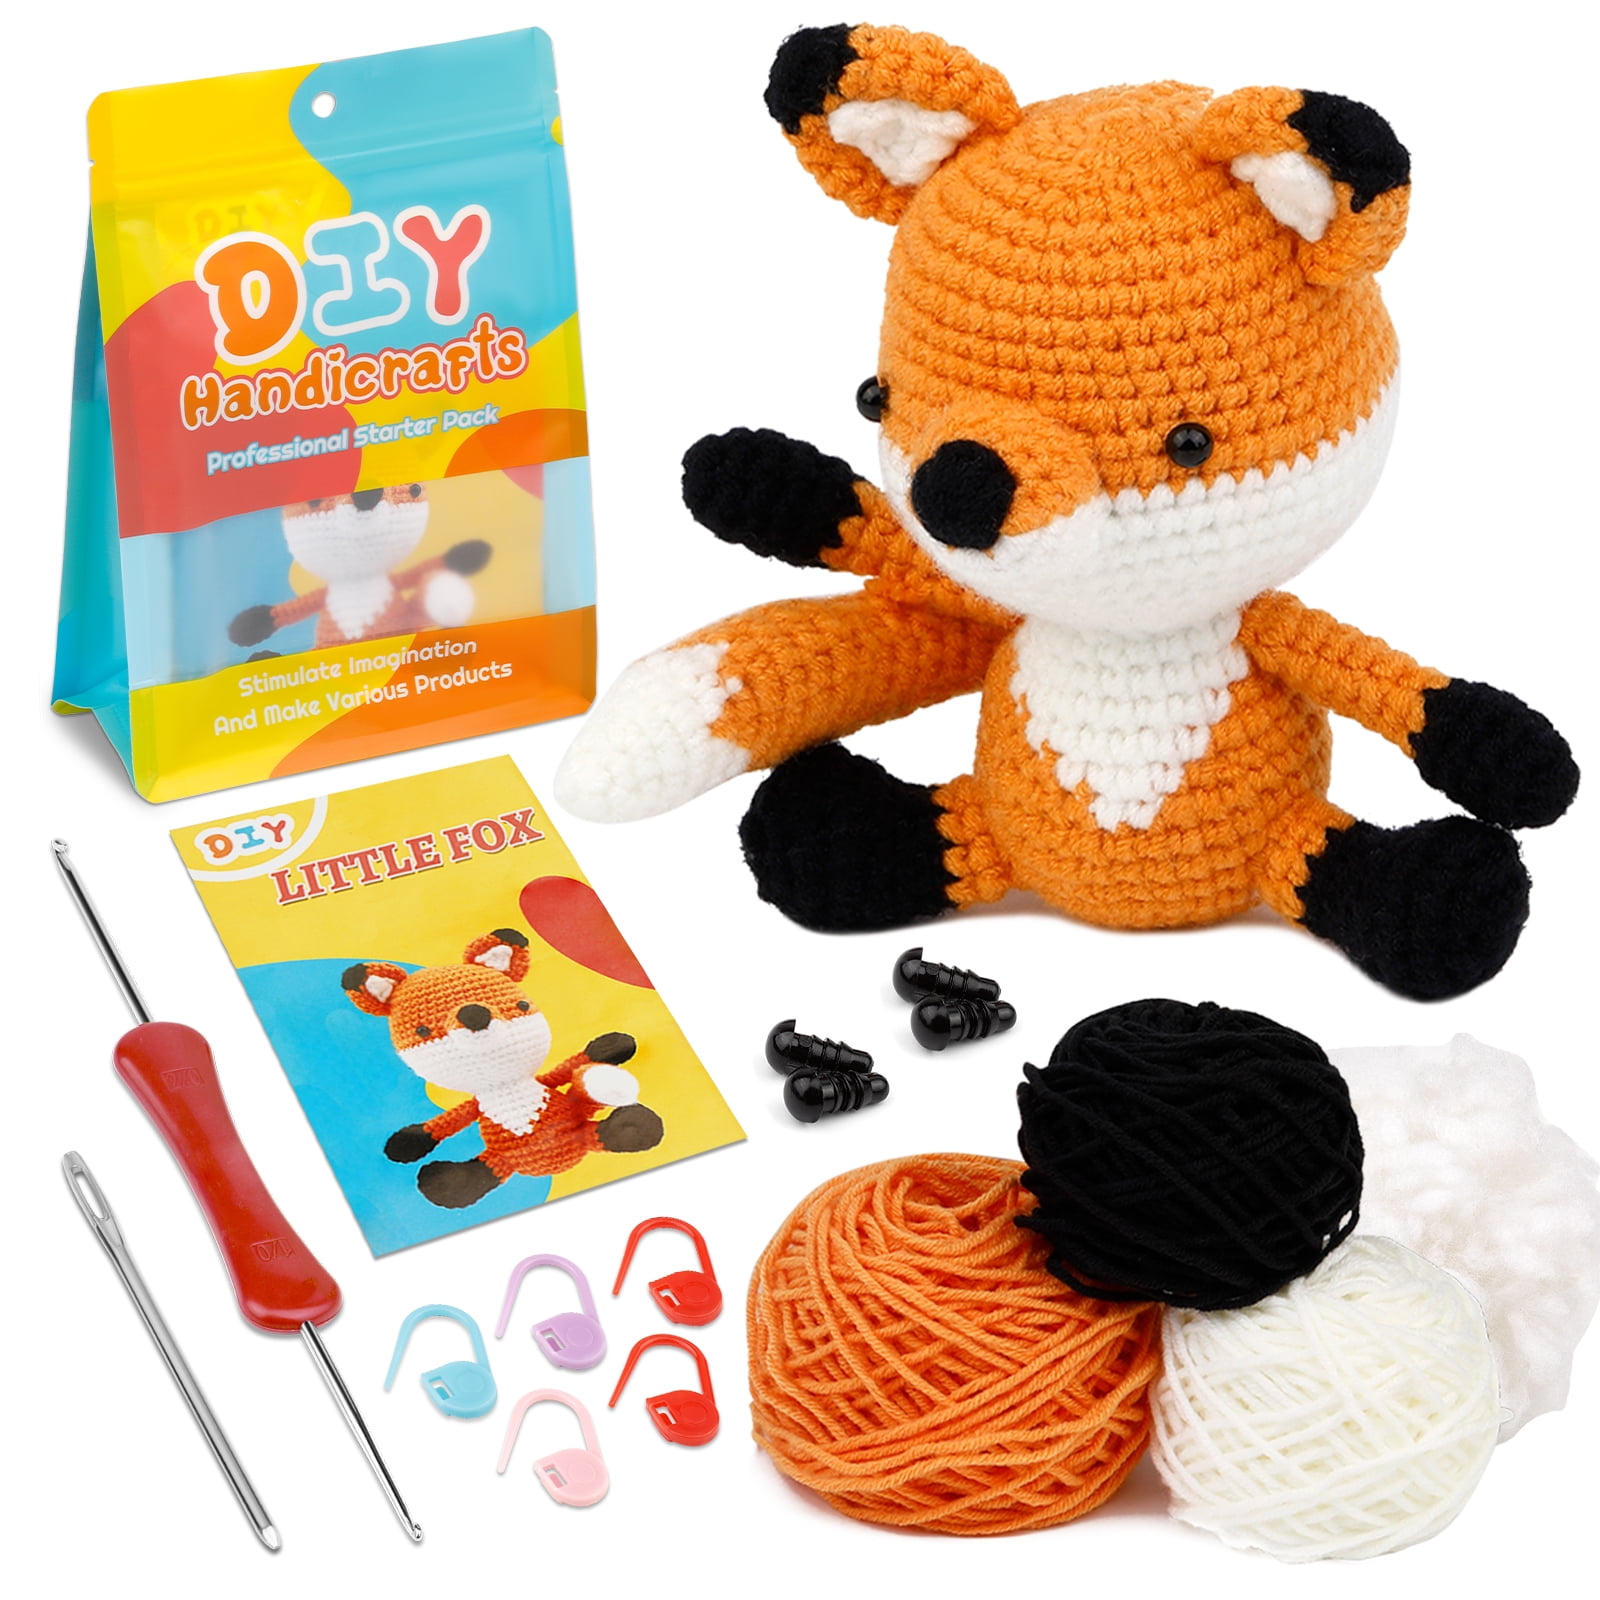 Wobbles Crochet Animal Kit DIY Animal Woobles Crochet Kit For Beginners  Knitting Kit Beginner Crochet Kit DIY Animal Crafts Fun - AliExpress